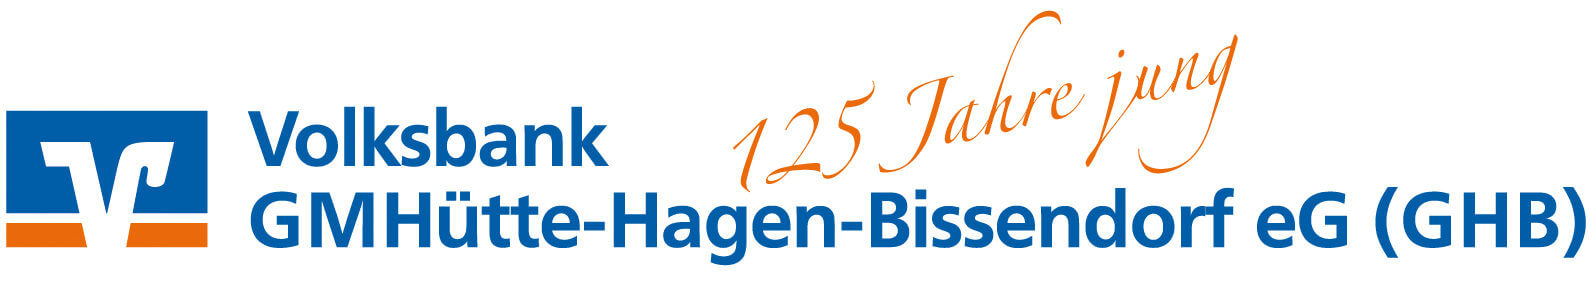 EINLADUNG – „Dankeschoen“ fuer 125 Jahre Treue! – Blog der Volksbank GHB